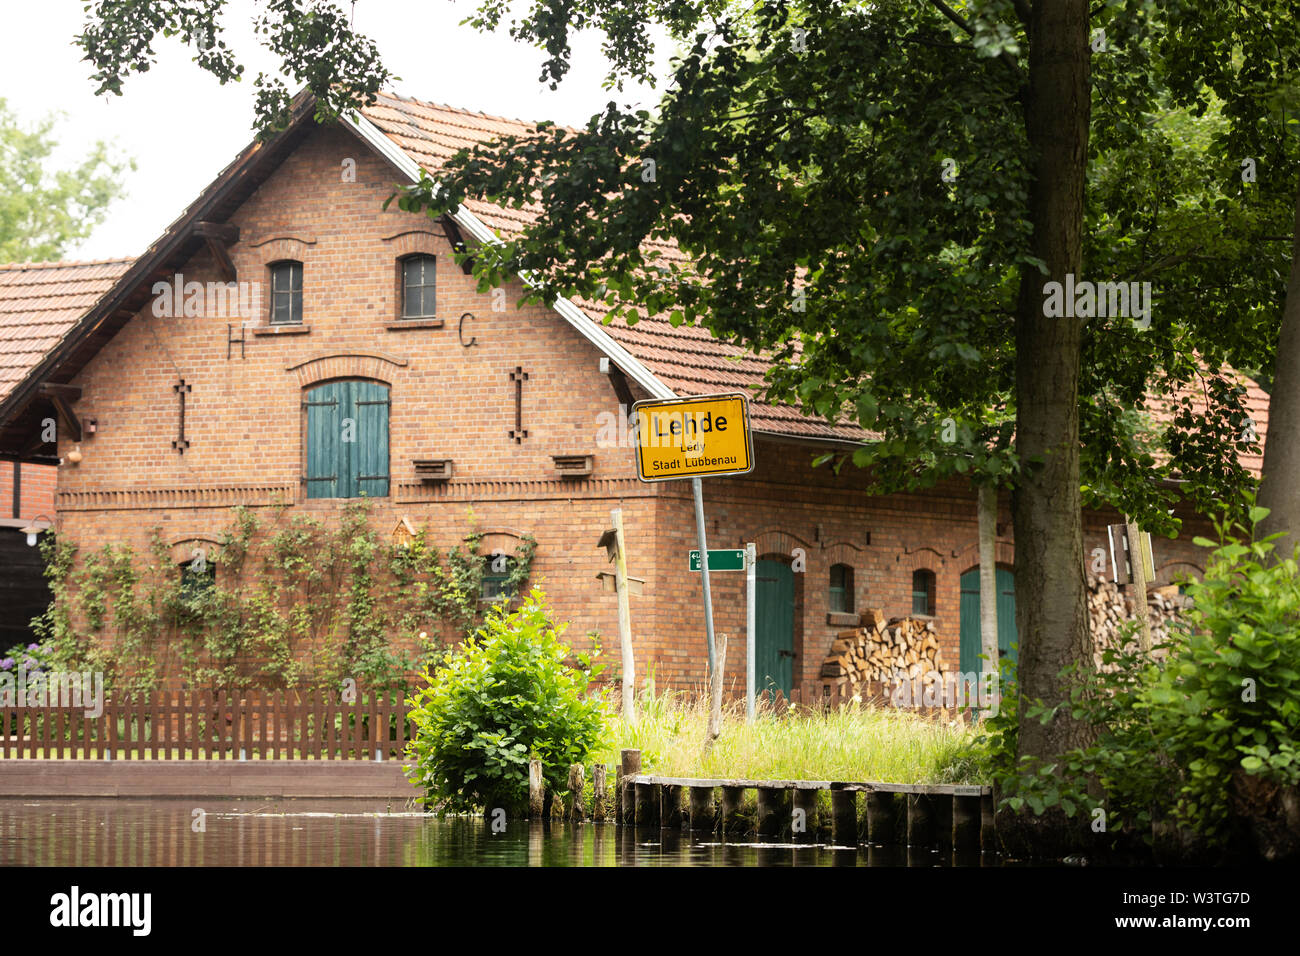 Un cartello che indica l'ingresso nel villaggio di Lehde sui canali della regione di Spreewald, Lübbenau, Germania, accanto a un'incantevole casa in mattoni. Foto Stock